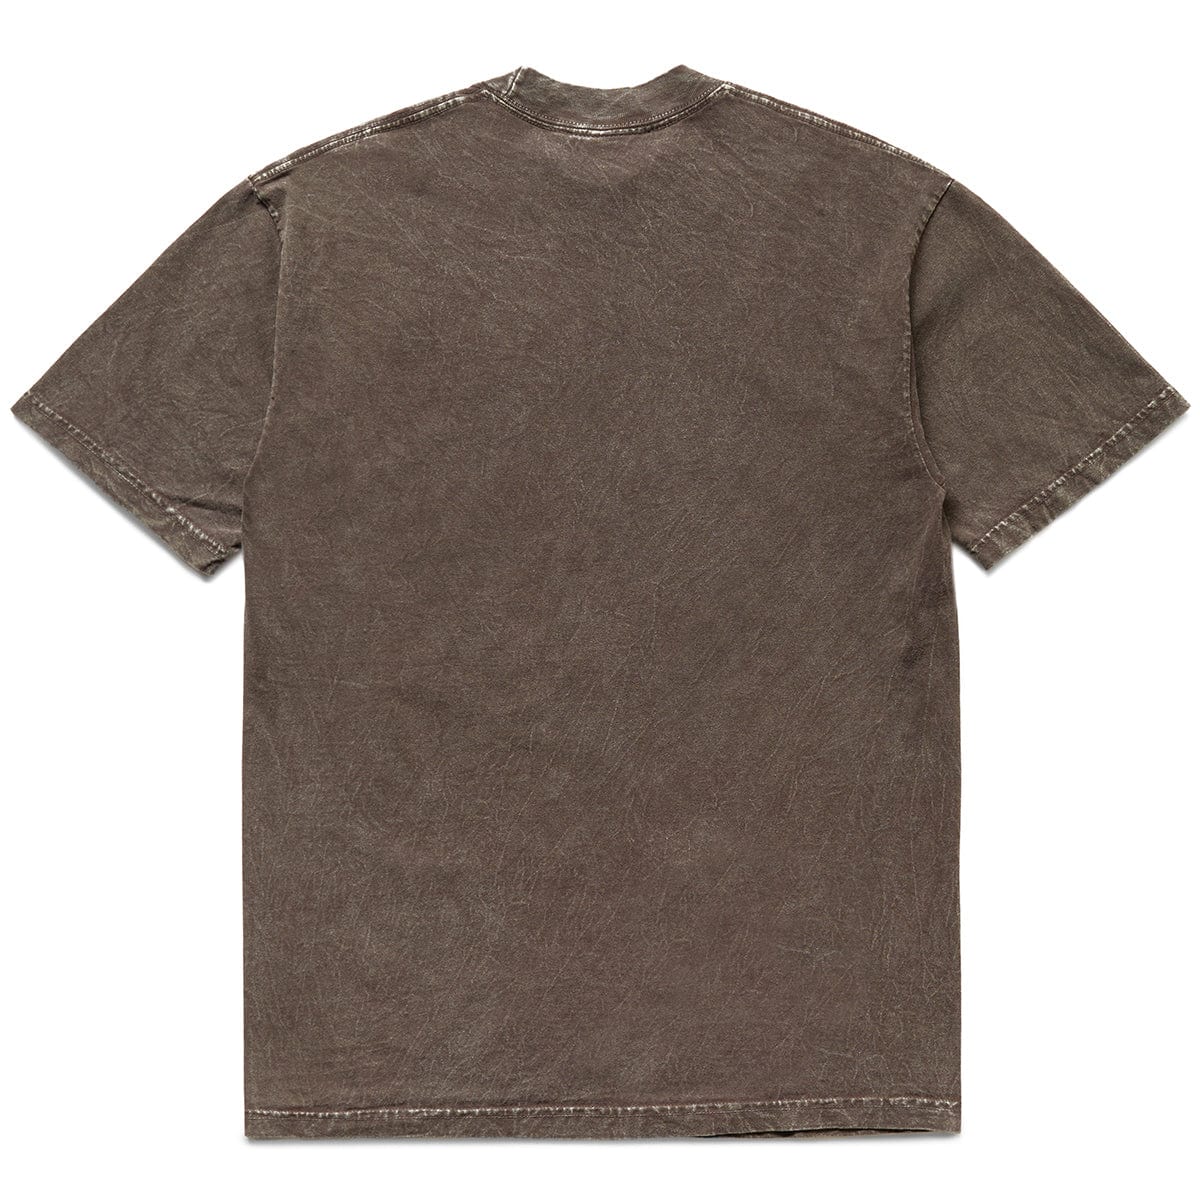 OCD Cleaners T-Shirts X BODEGA ULTRA PURE TEE (POM DYE)